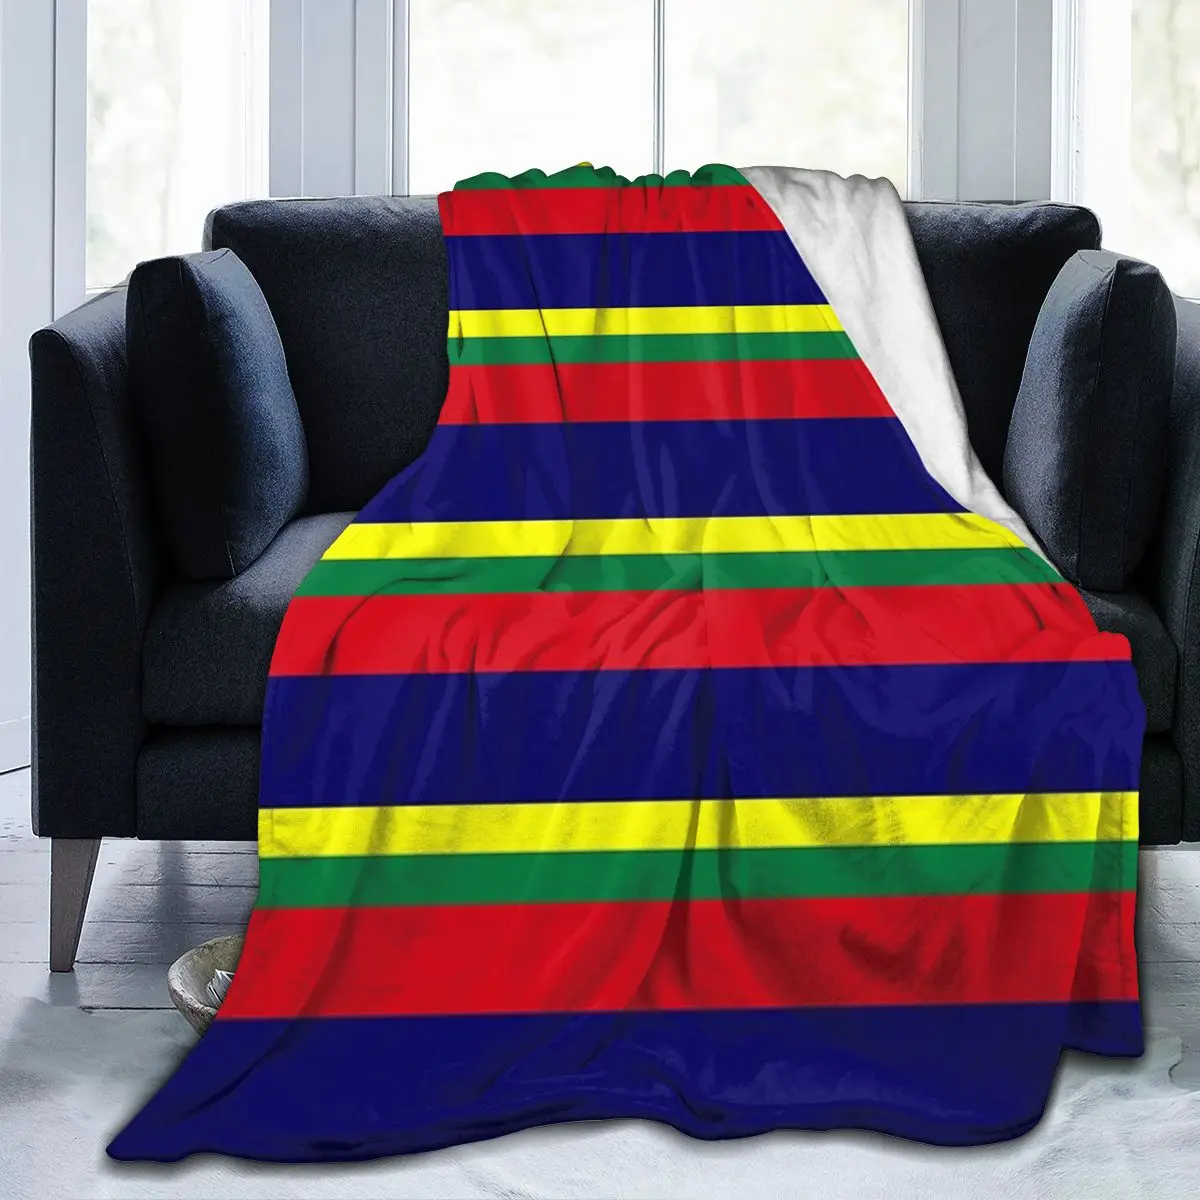 

Одеяло королевского военного морского корабля, одеяло для лица, модное одеяло на День святого Валентина, антипиллинговое, разных размеров